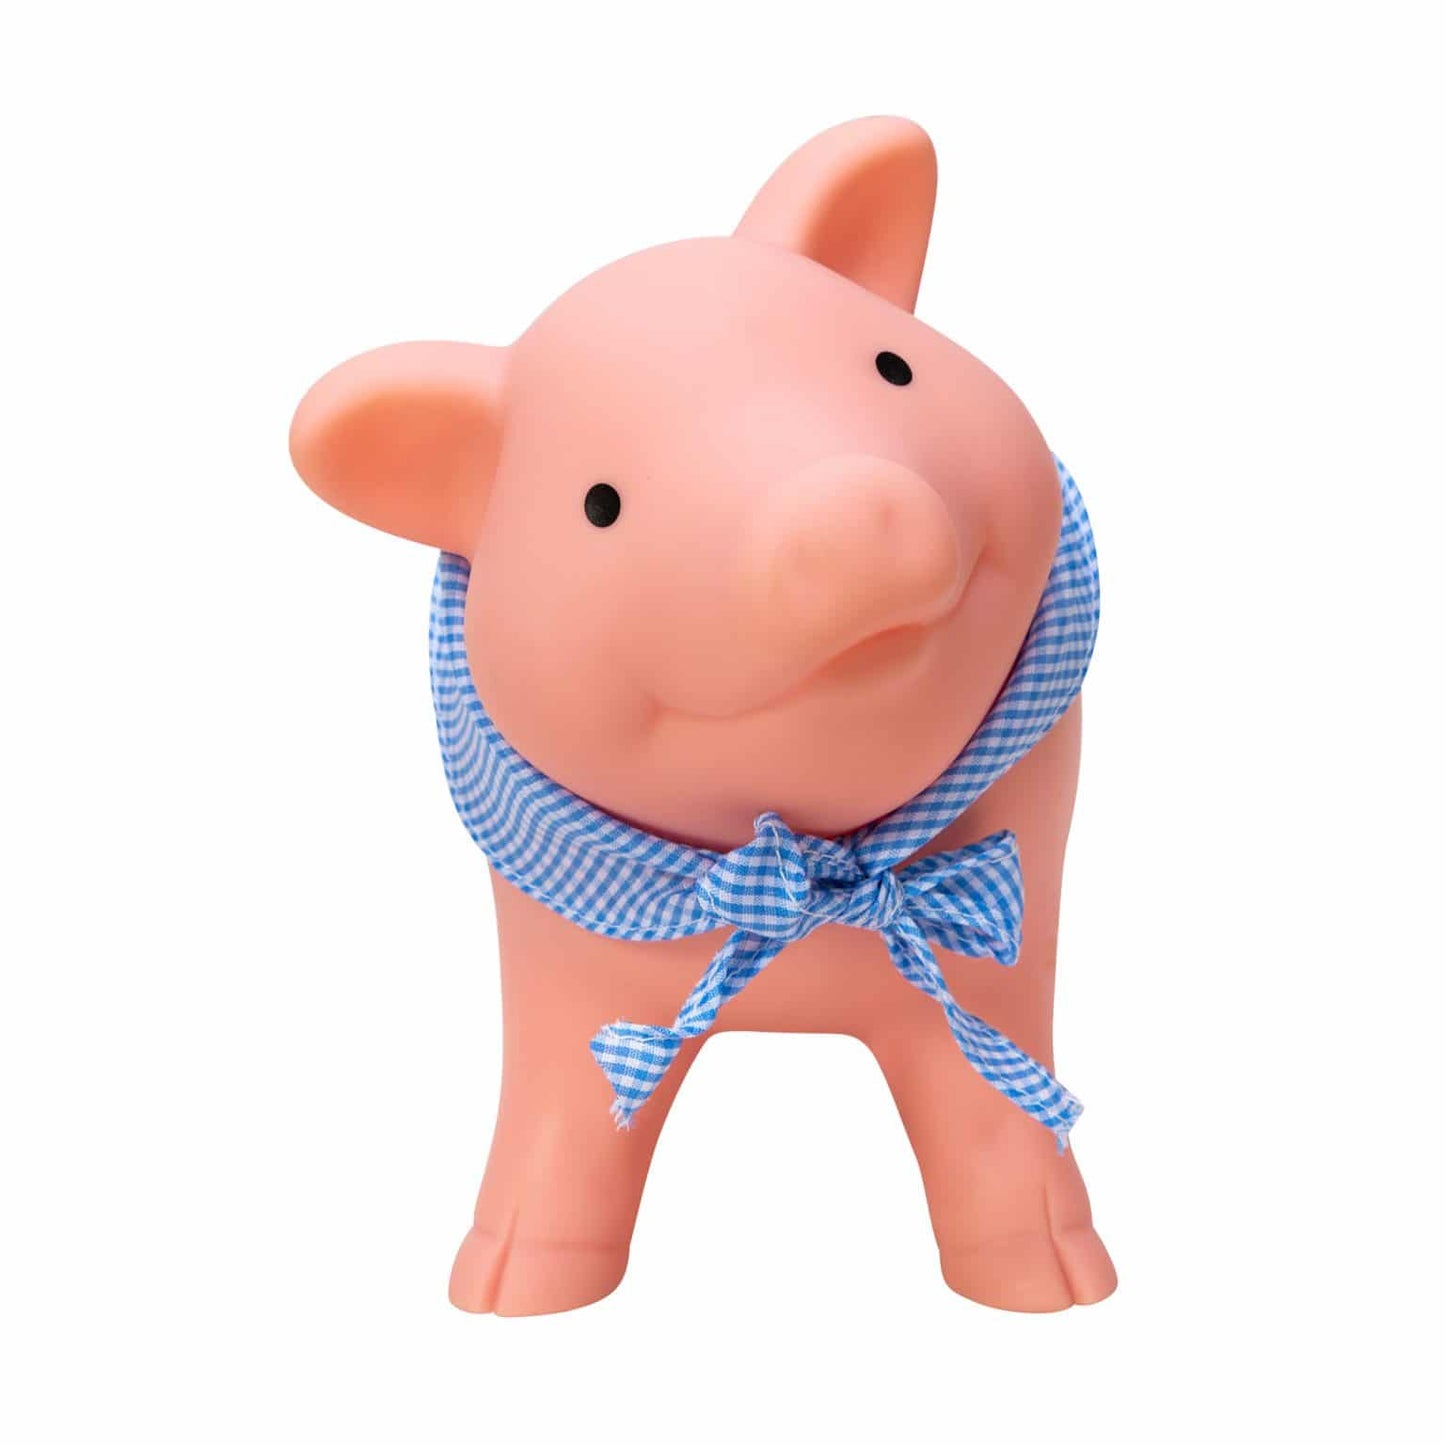 Rubber Piggy Bank - Schylling